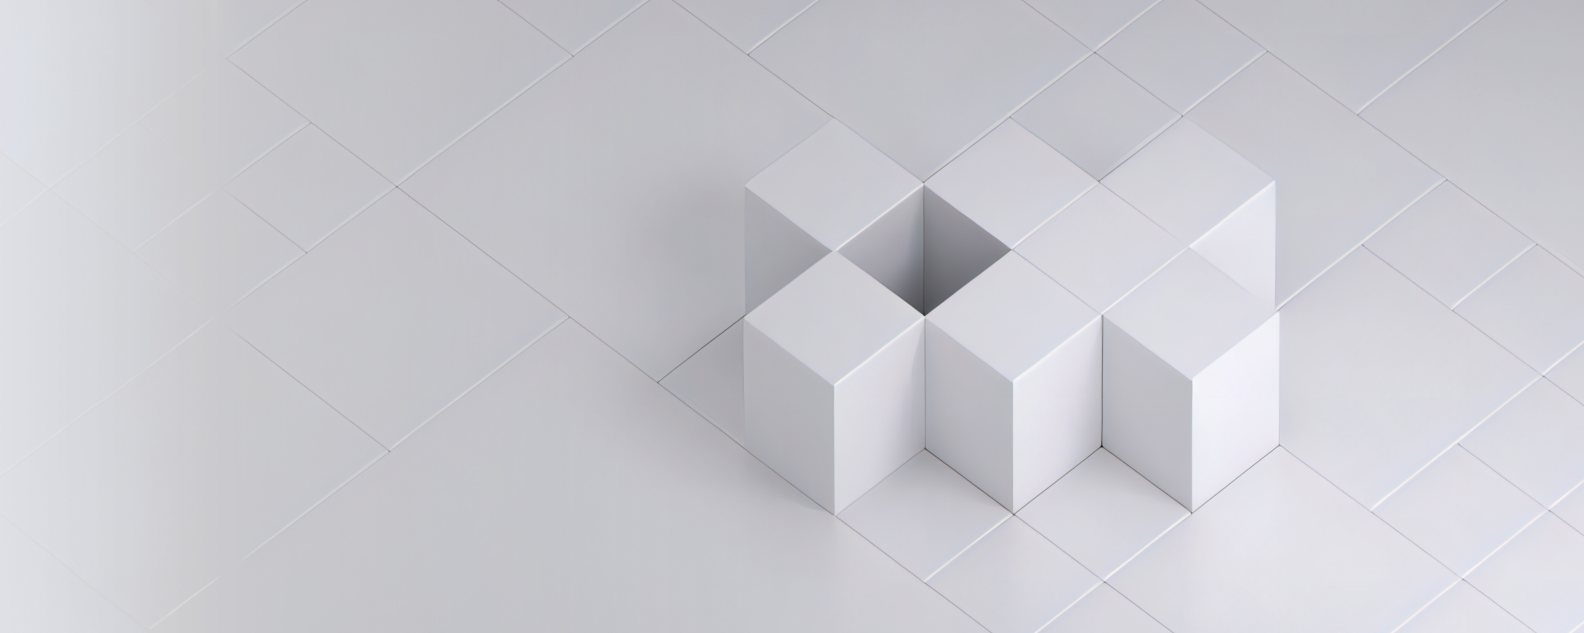 正方形の白いグリッド上に配置された7つの白い立方体が模様を形成しているリアルな画像または写真